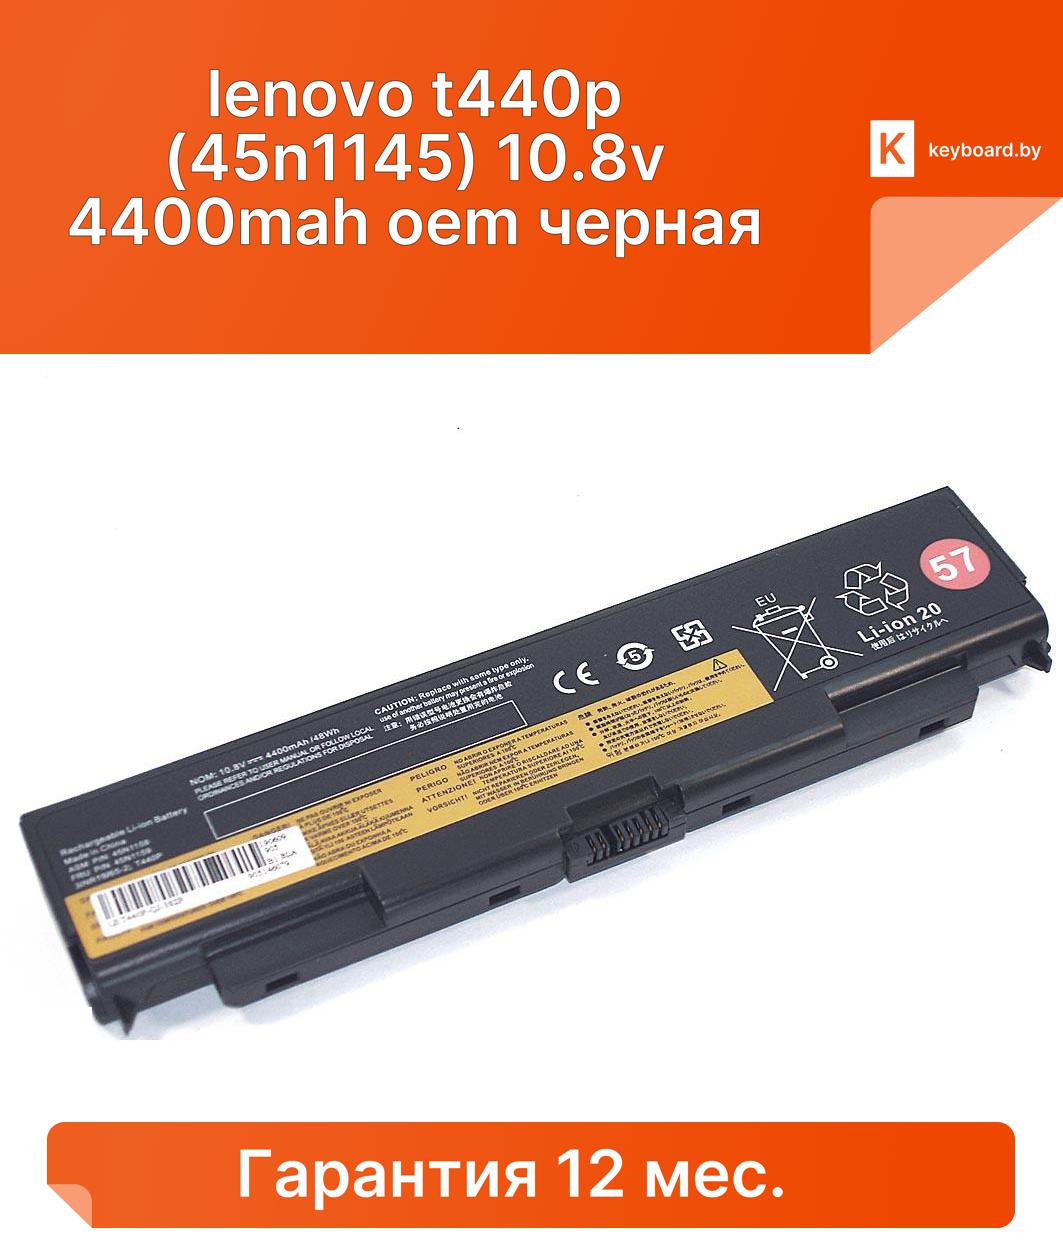 Аккумуляторная батарея для ноутбука lenovo t440p (45n1145) 10.8v 4400mah oem черная